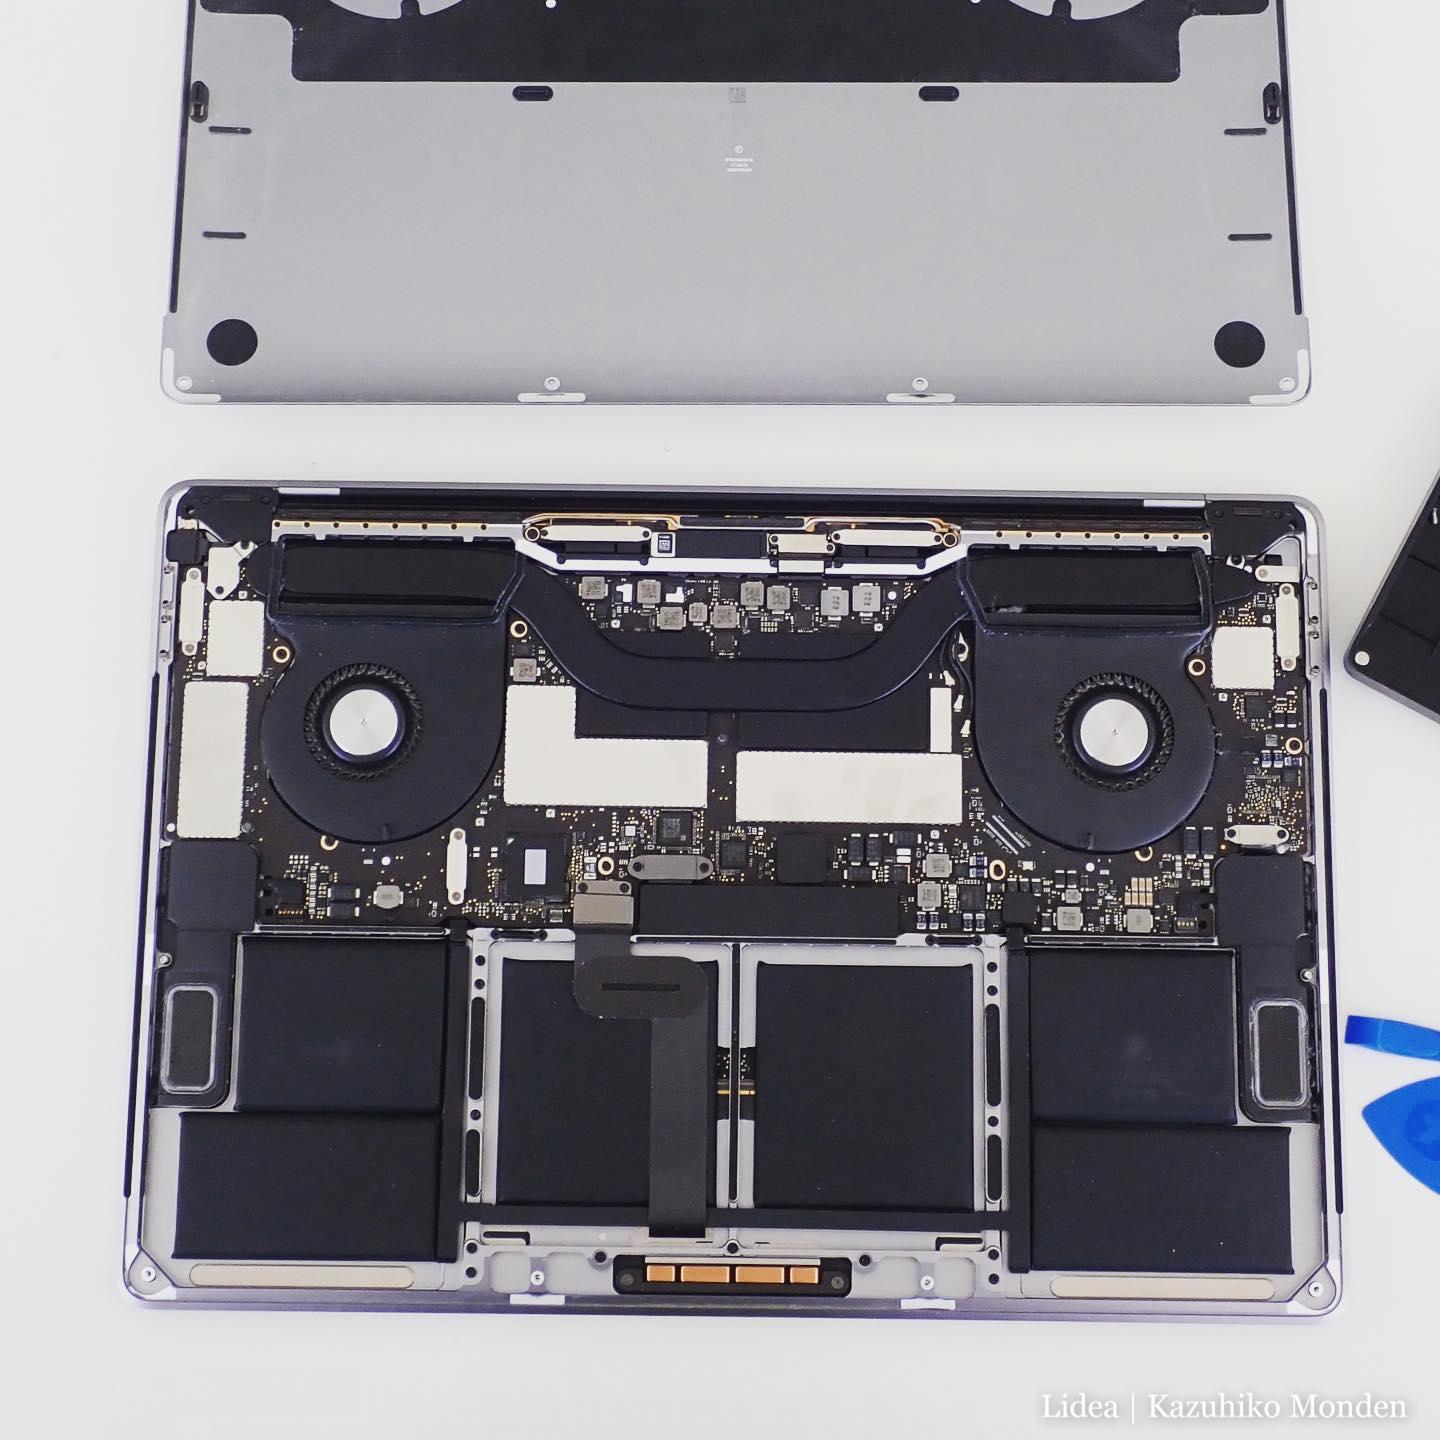 MacBook Pro 2017 TouchBar を分解清掃。もっと埃まみれかと思ったら意外とそうでもなかった。